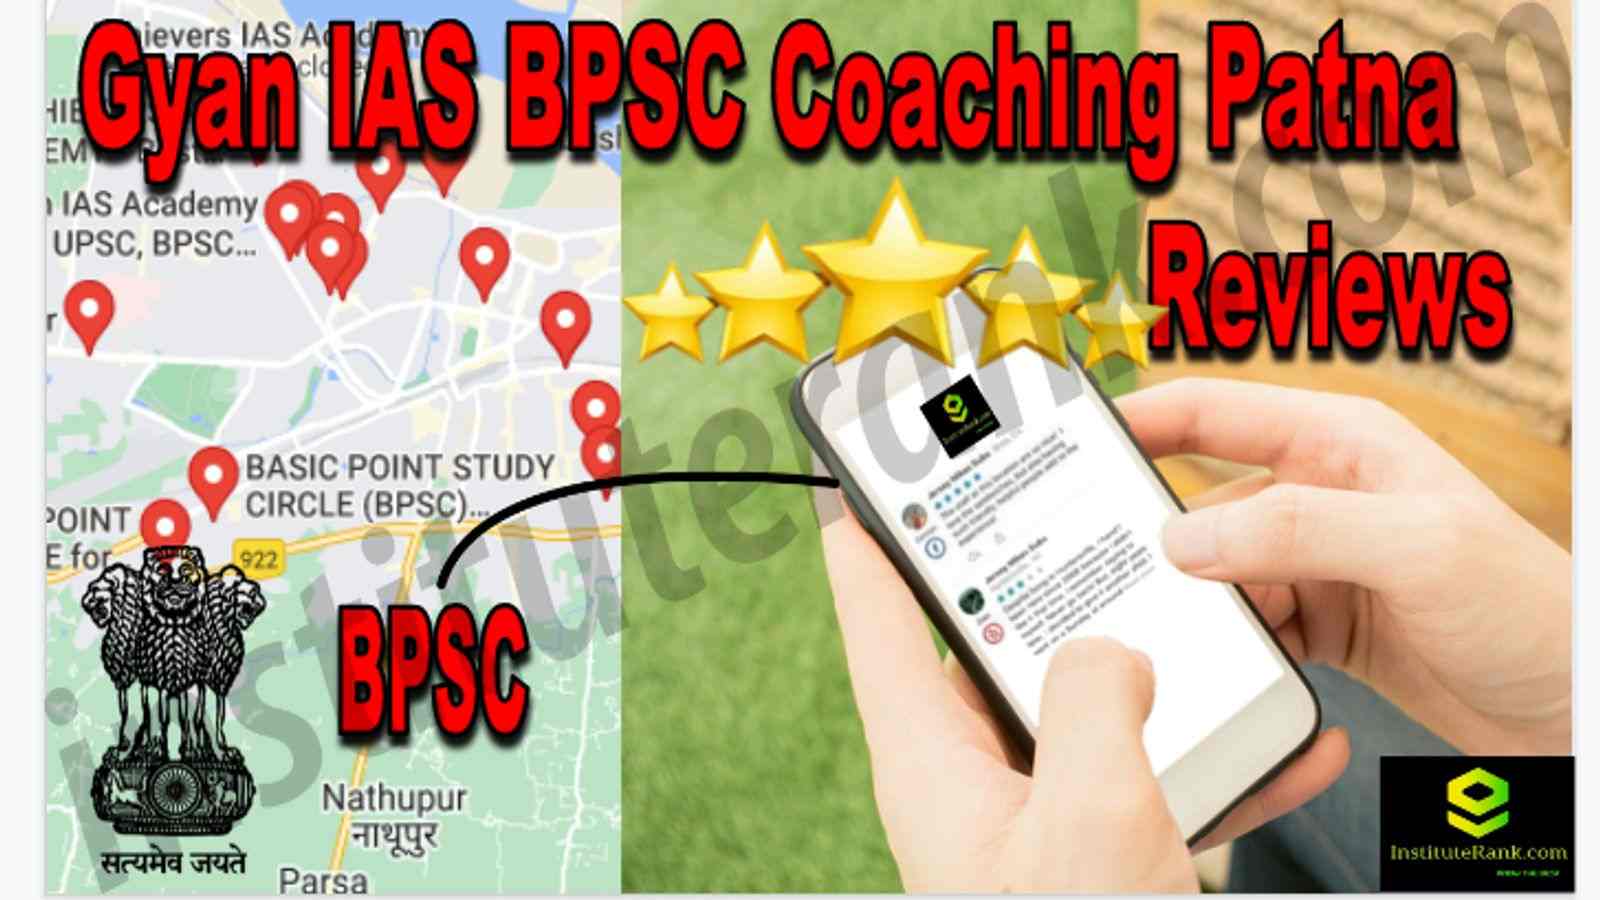 Gyan IAS BPSC Coaching Patna Reviews